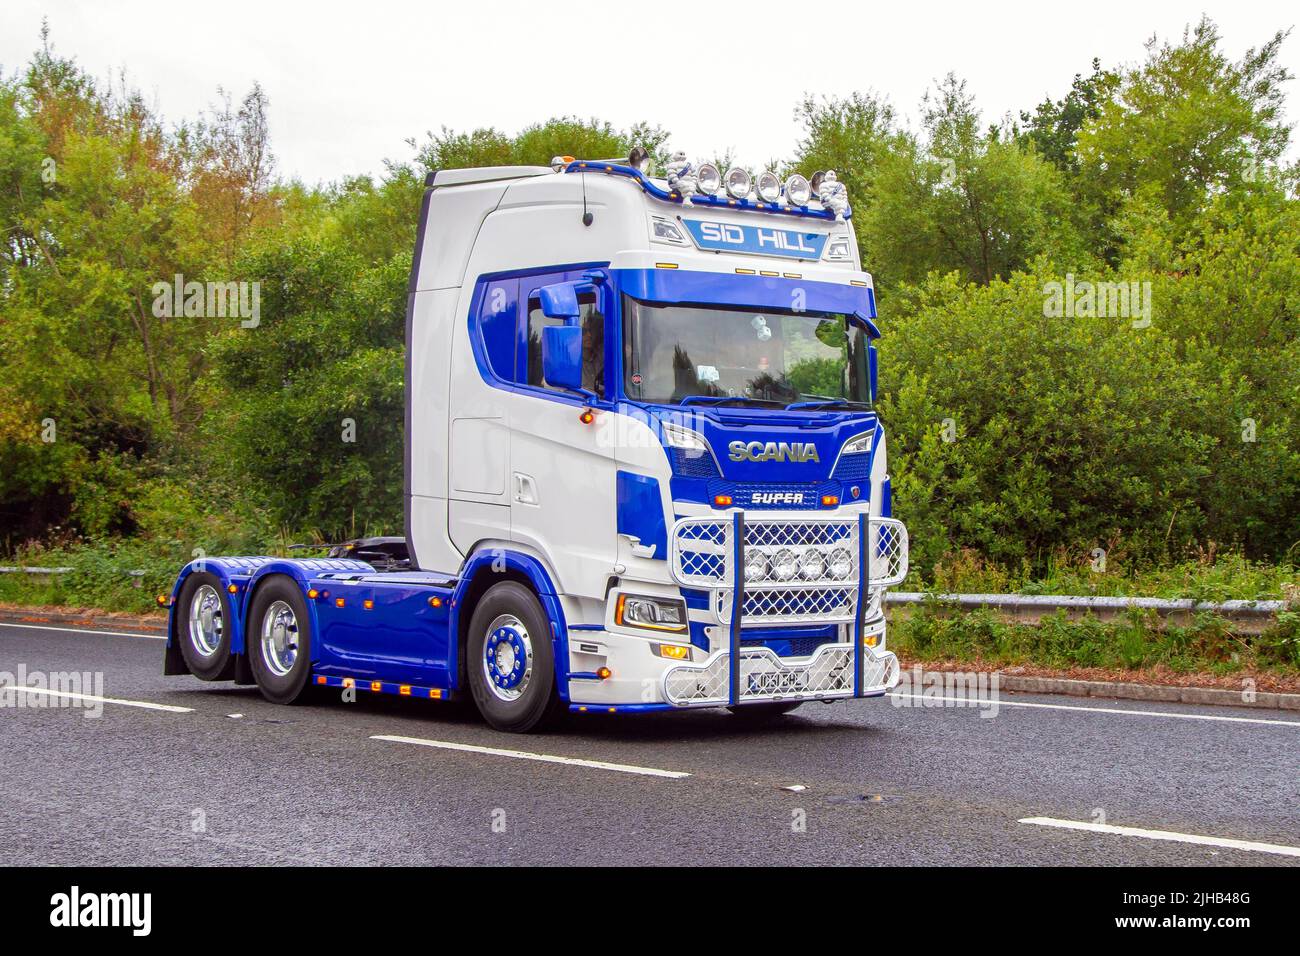 2019 camion diesel SCANIA SUPER R580 A 6x2 16353cc blanc bleu ; transporteurs massifs et camions méga Sid Hill transport Ltd ; en route vers le Fleetwood Festival of transport, Royaume-Uni Banque D'Images